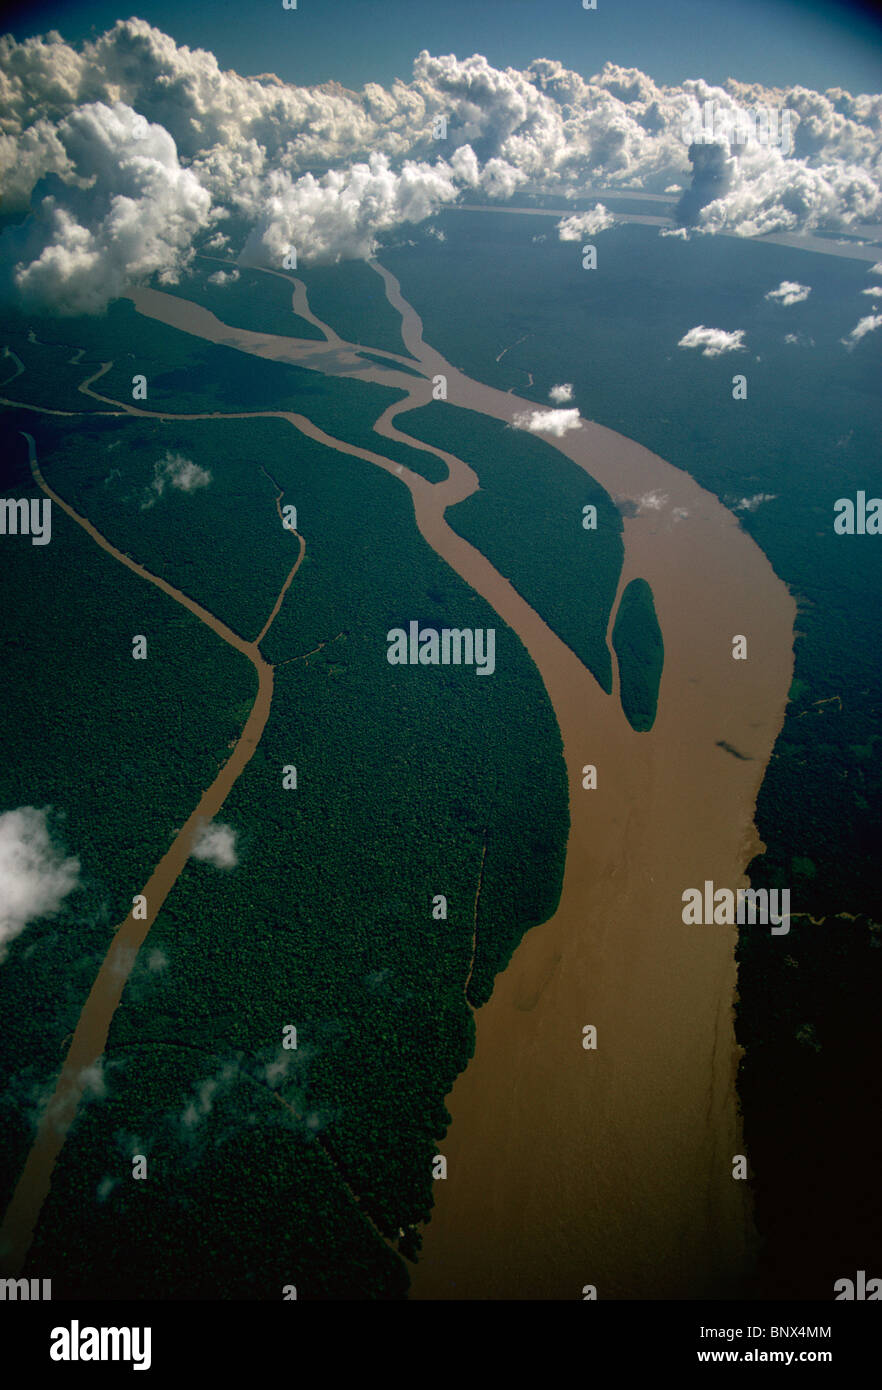 Amazon delta -Fotos und -Bildmaterial in hoher Auflösung – Alamy